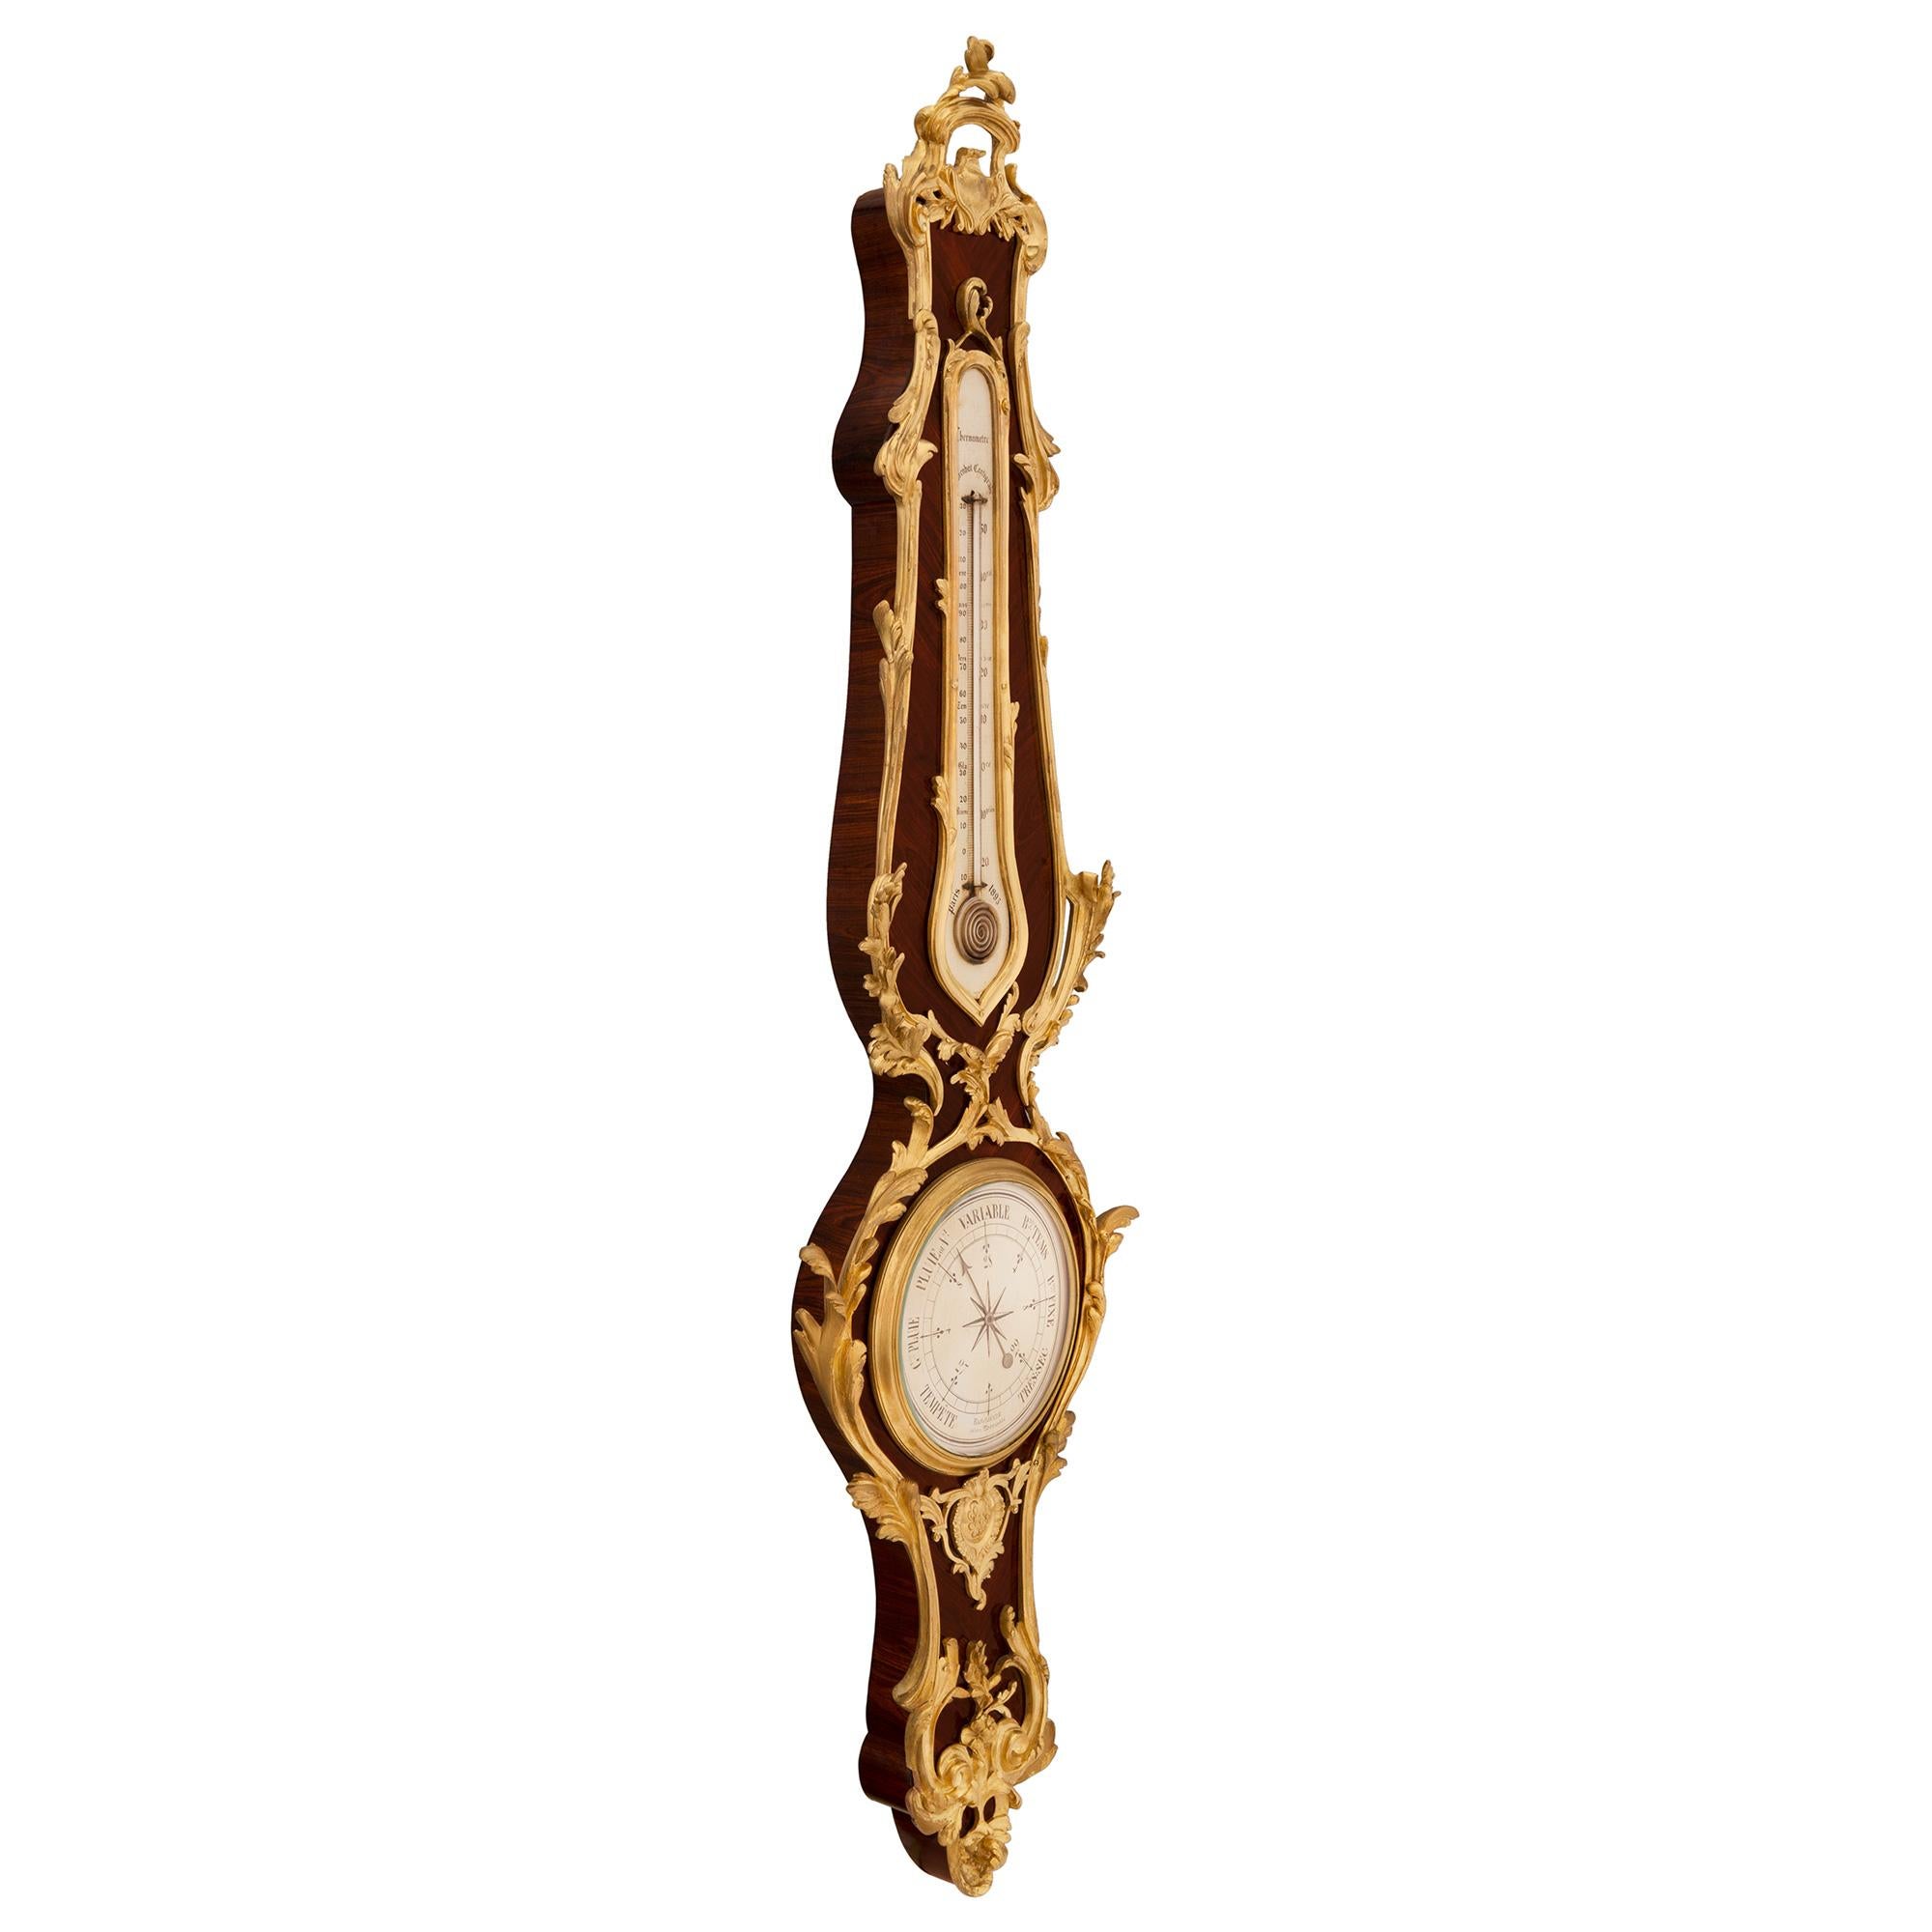 Superbe baromètre/thermomètre français du 19ème siècle, de style Louis XV, en bois royal et bronze doré, signé F. Linke. Le baromètre est centré par une fine réserve de fond feuilletée richement ciselée, avec d'élégants motifs à volutes qui